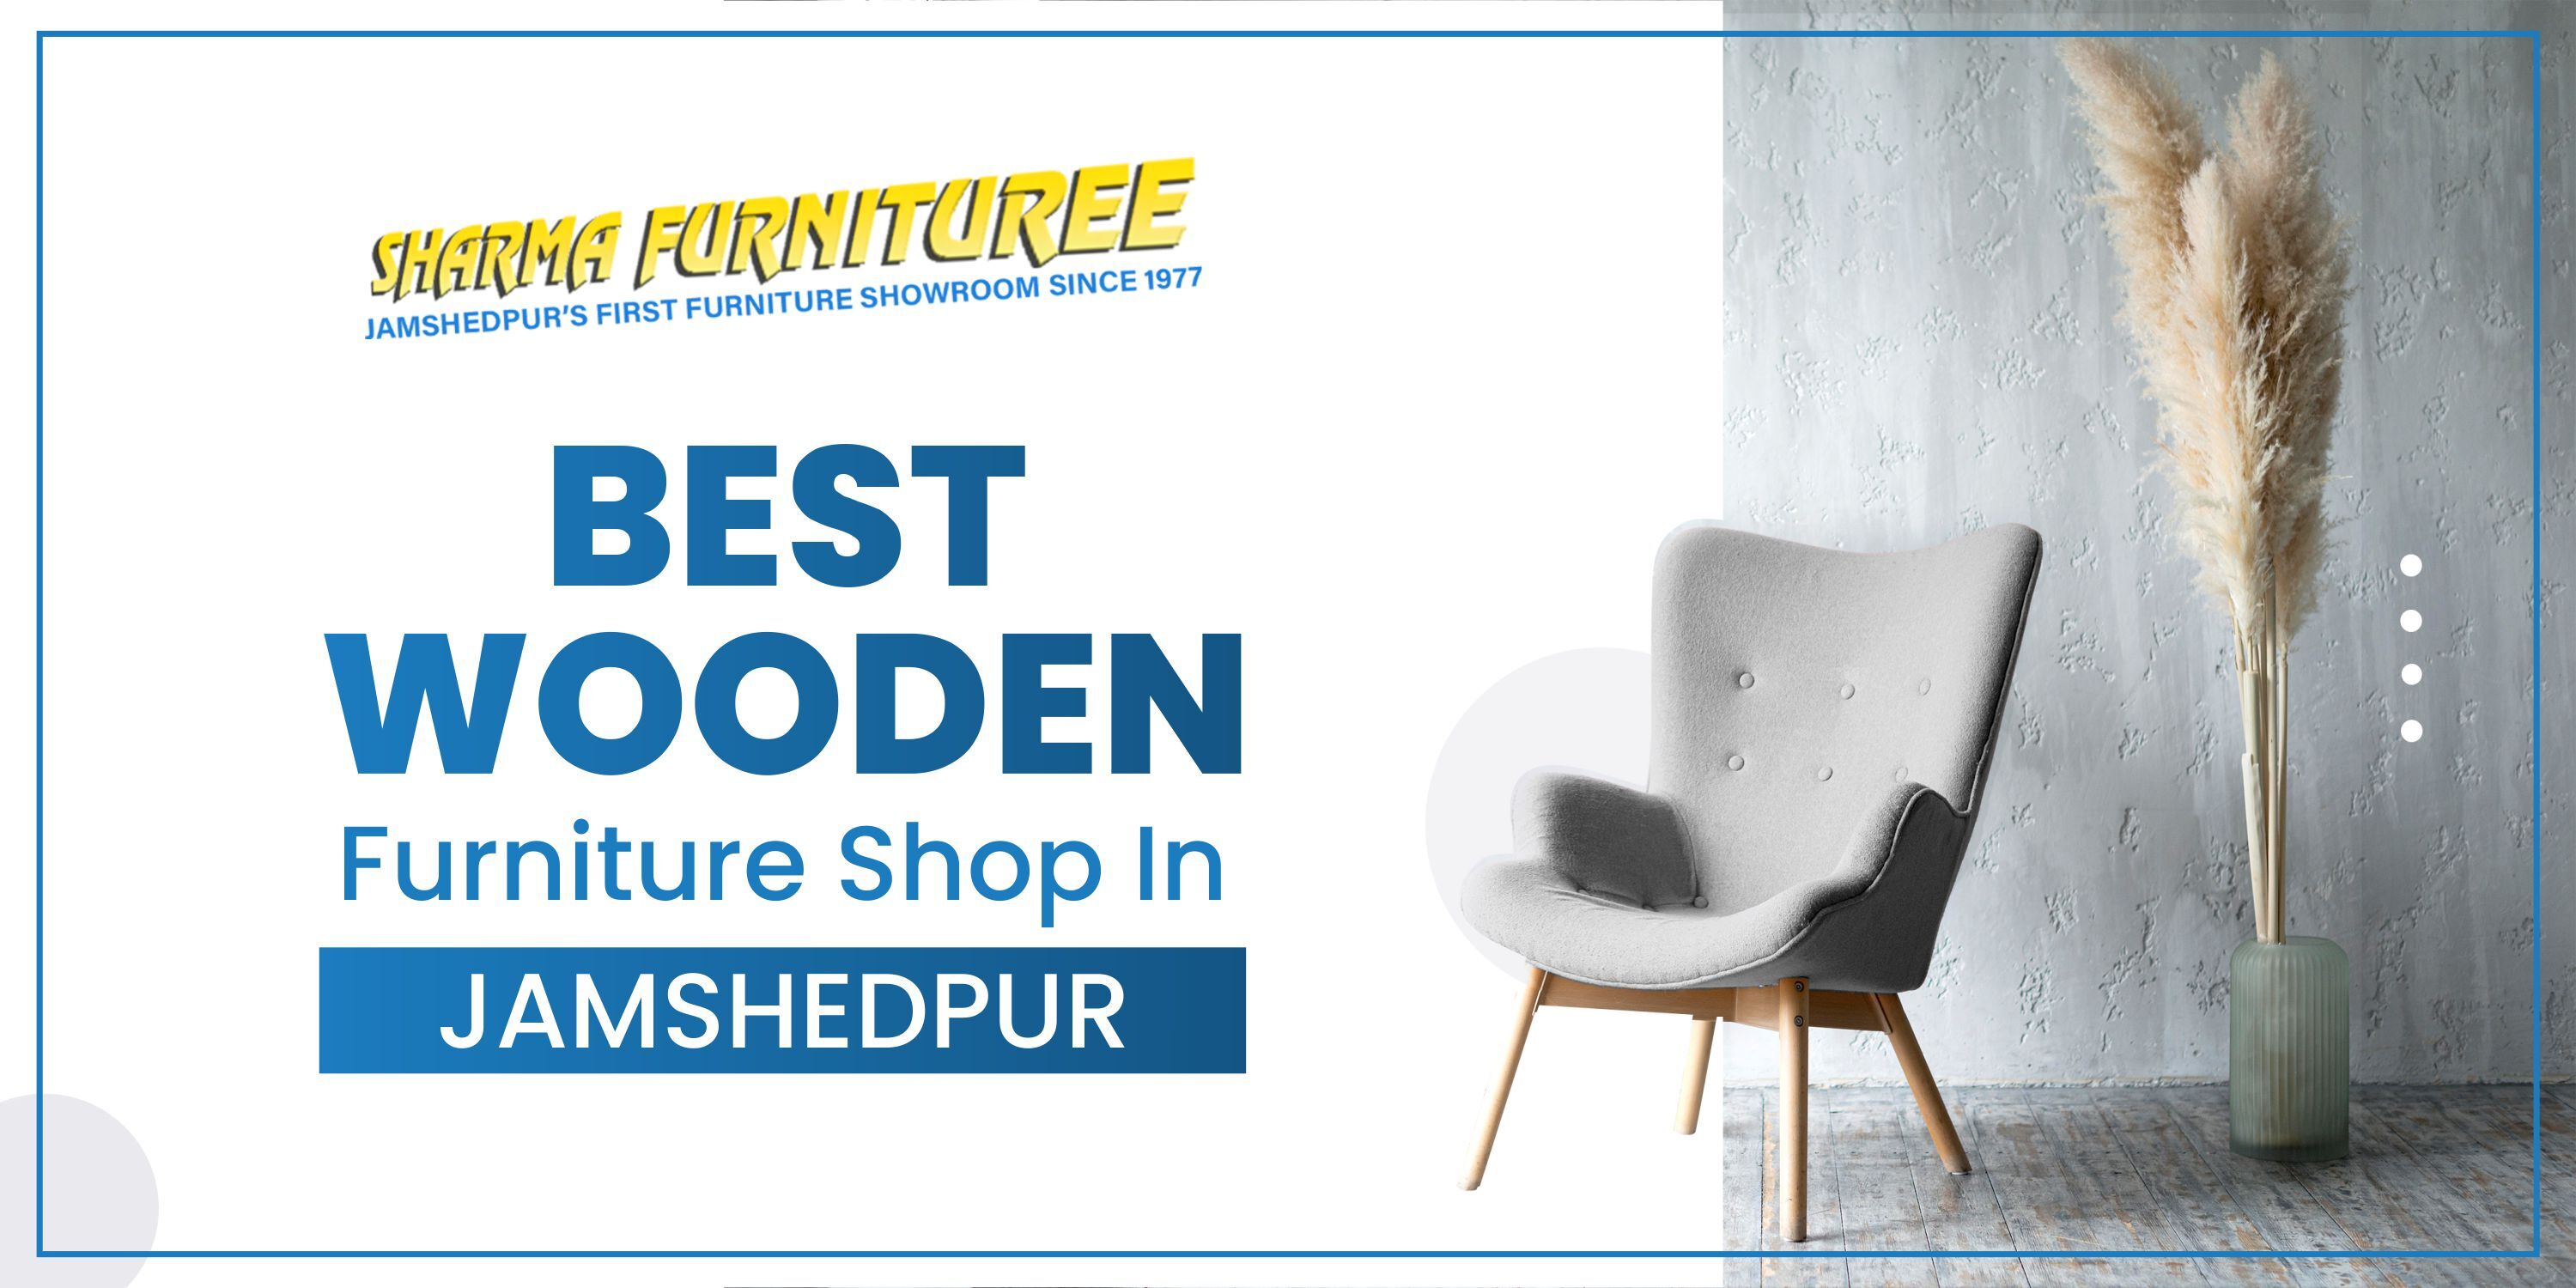 Best Wooden Furniture Shop in Jamshedpur